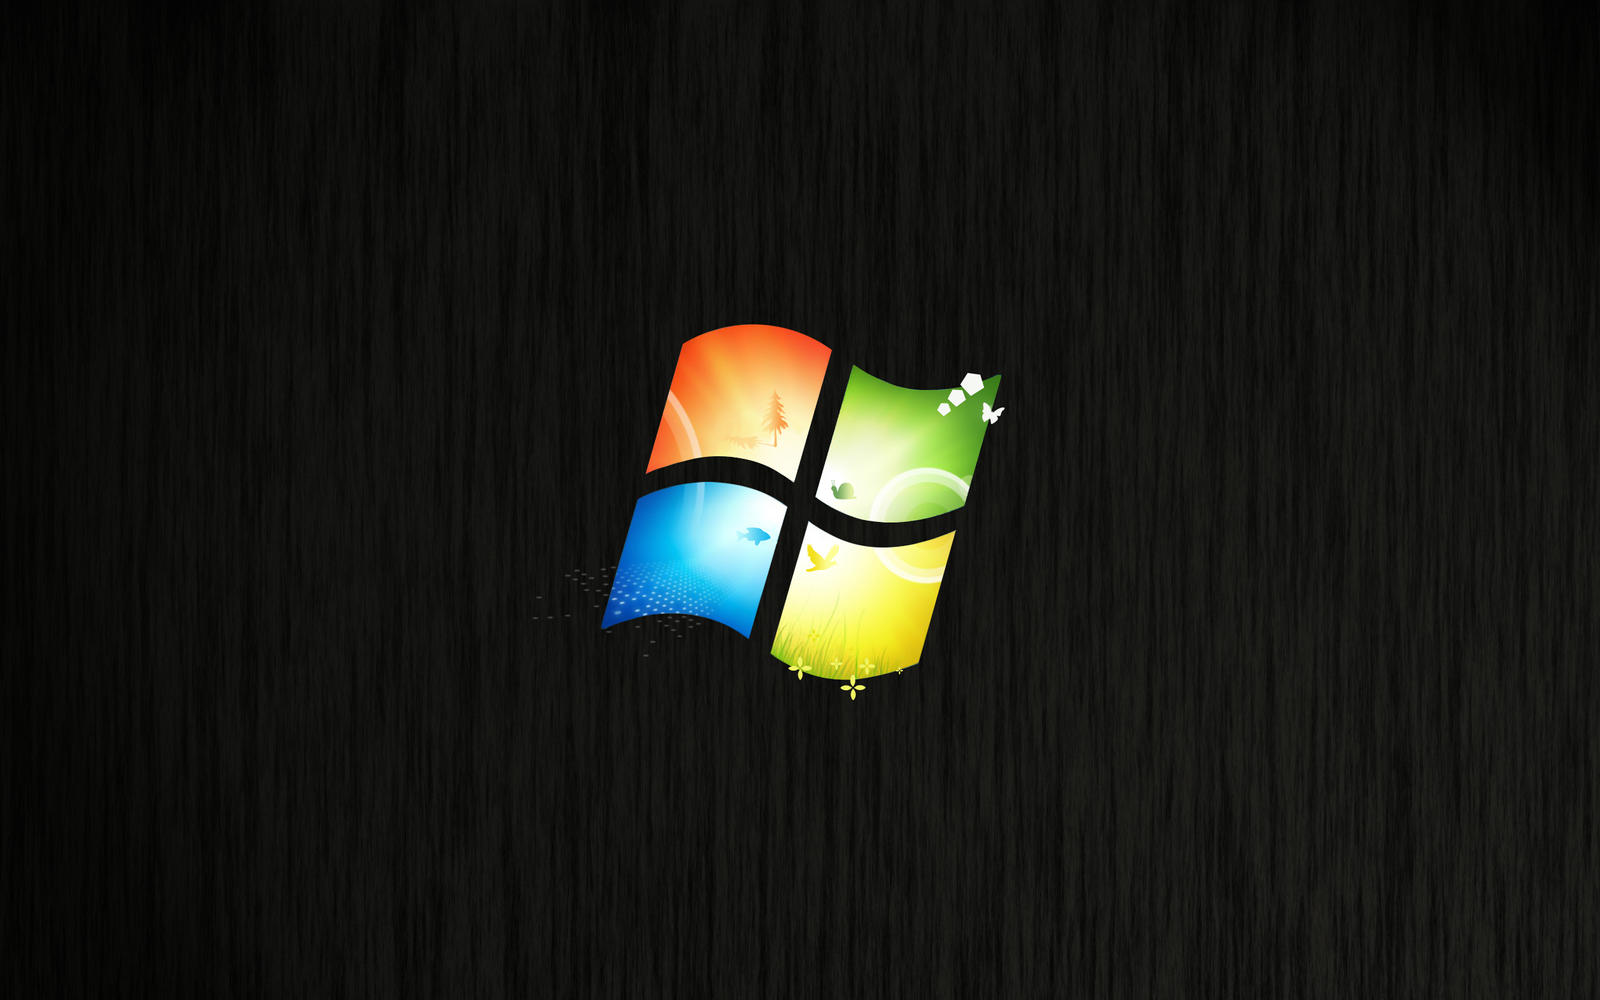 windows 7 logo redone by TravisLutz on DeviantArt